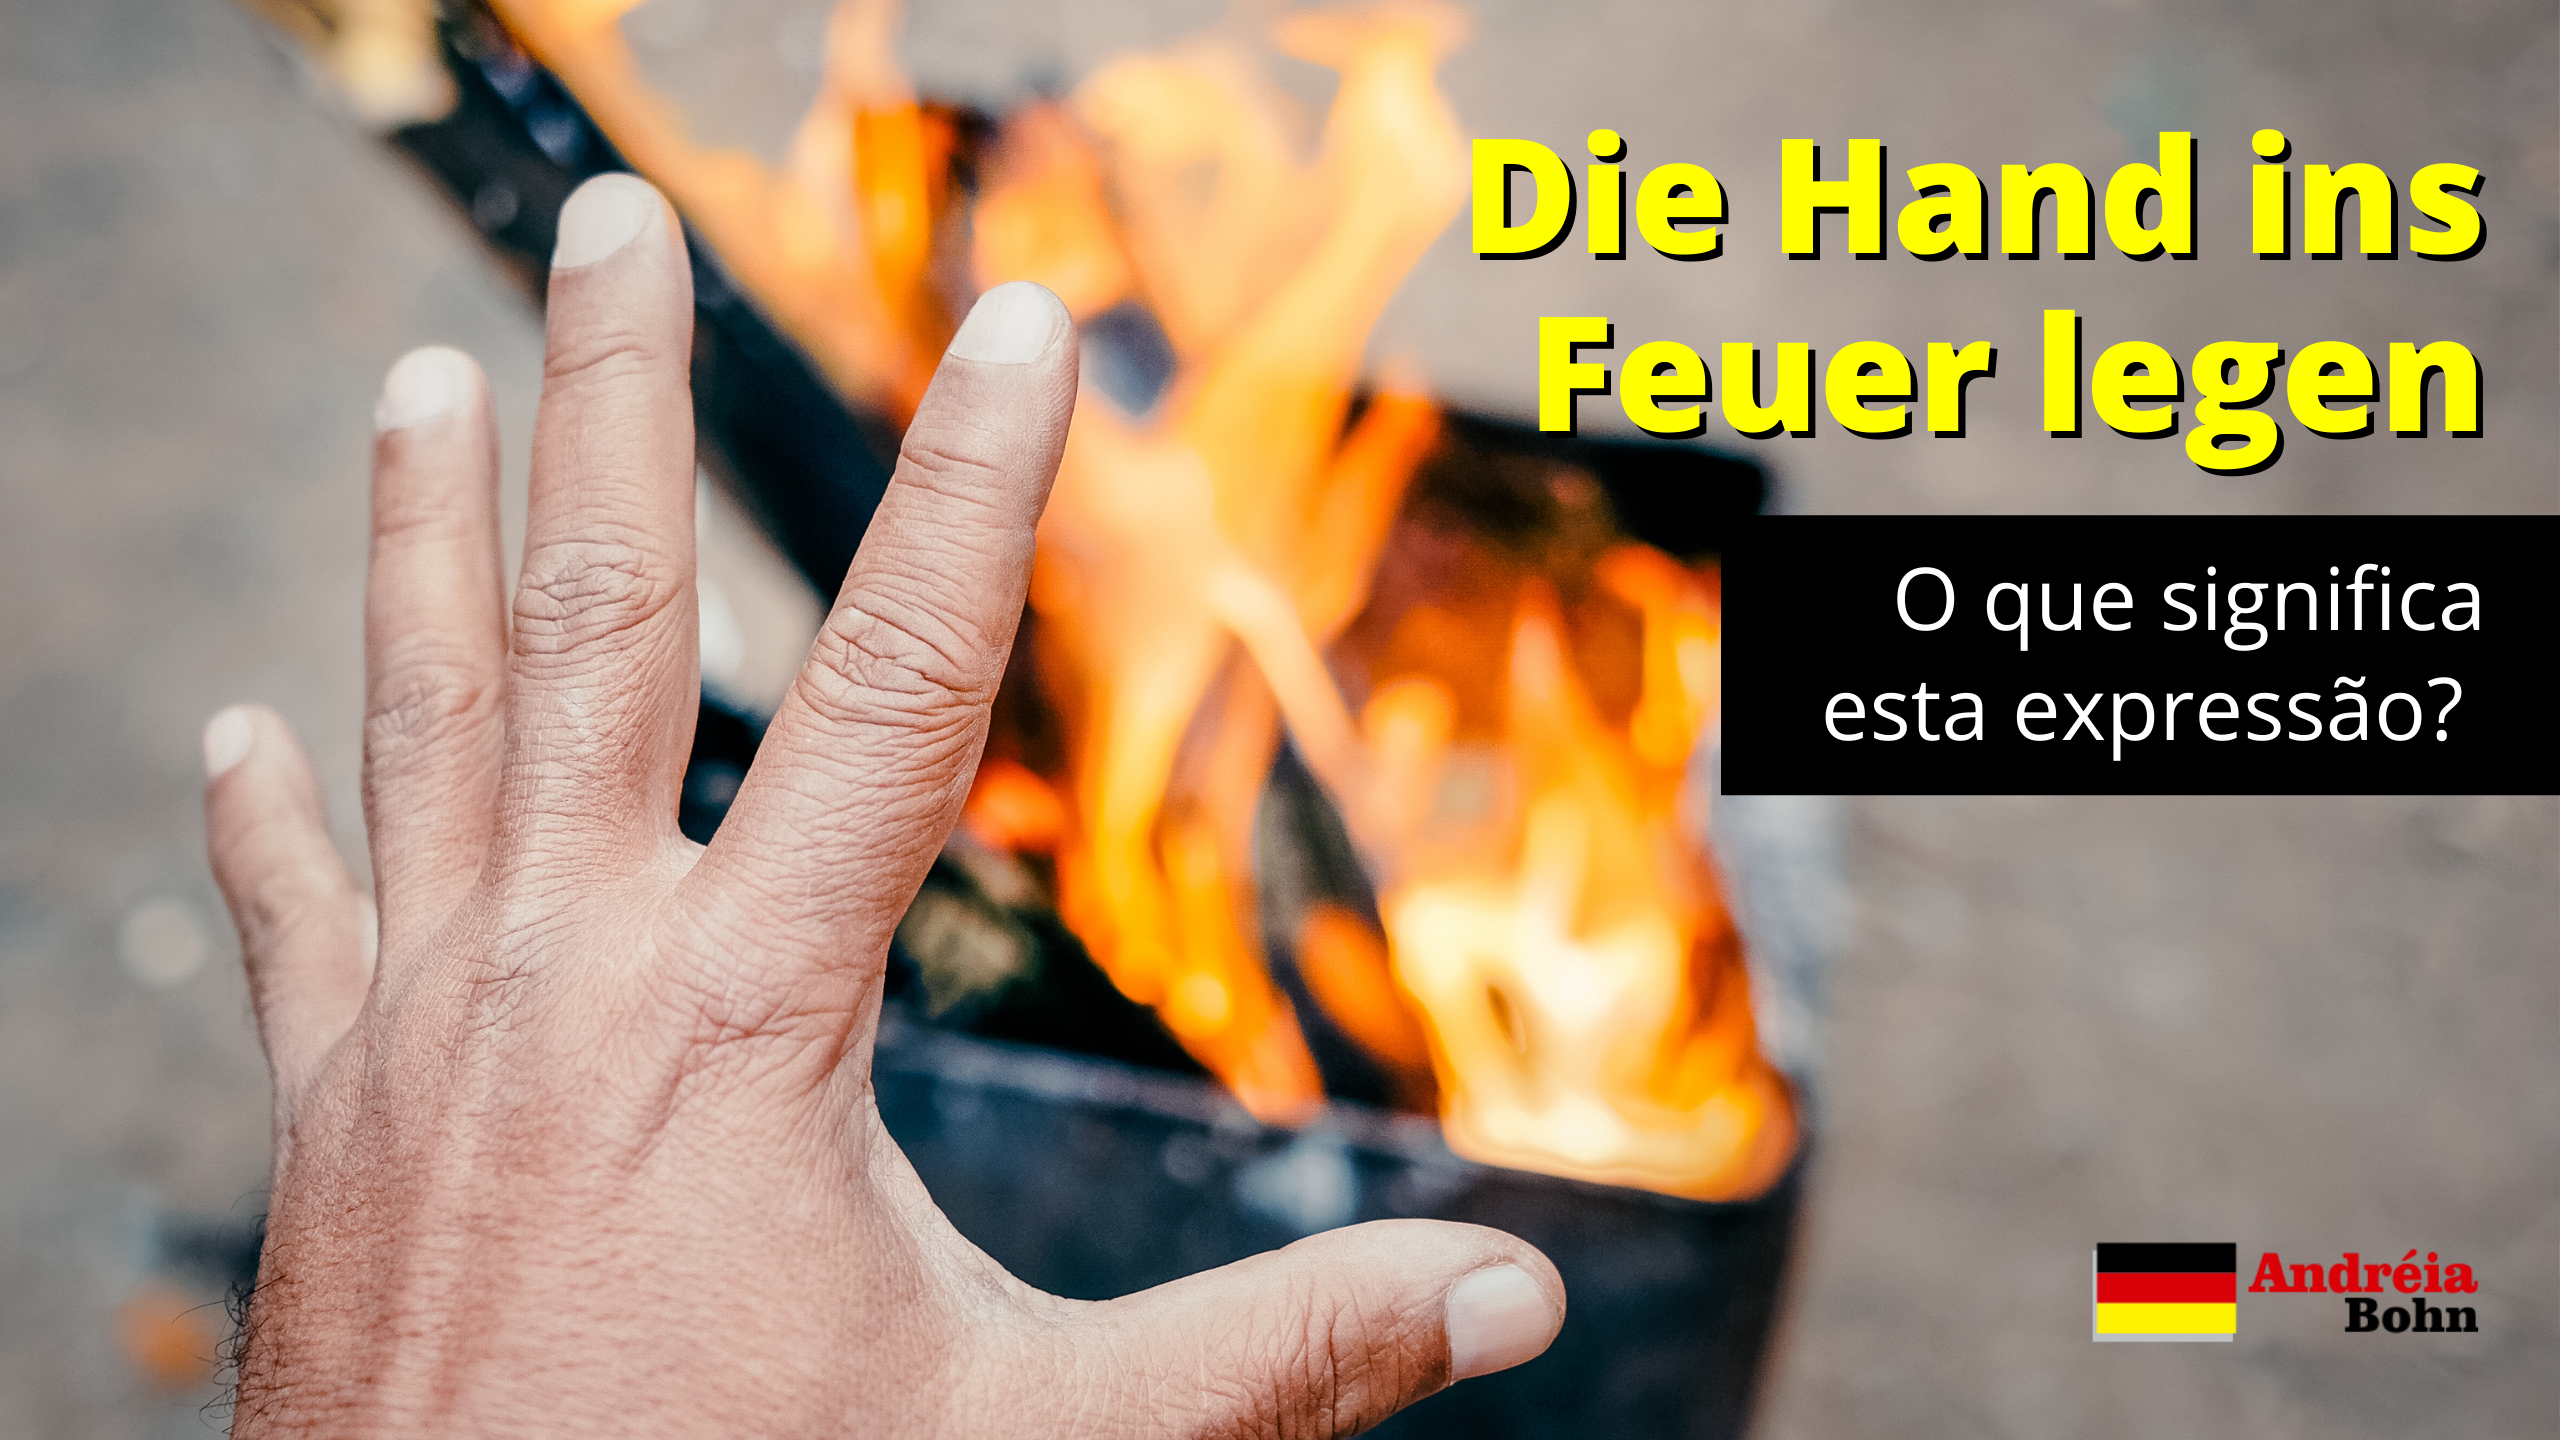 Die Hand ins Feuer legen  O que significa esta expressão em alemão?